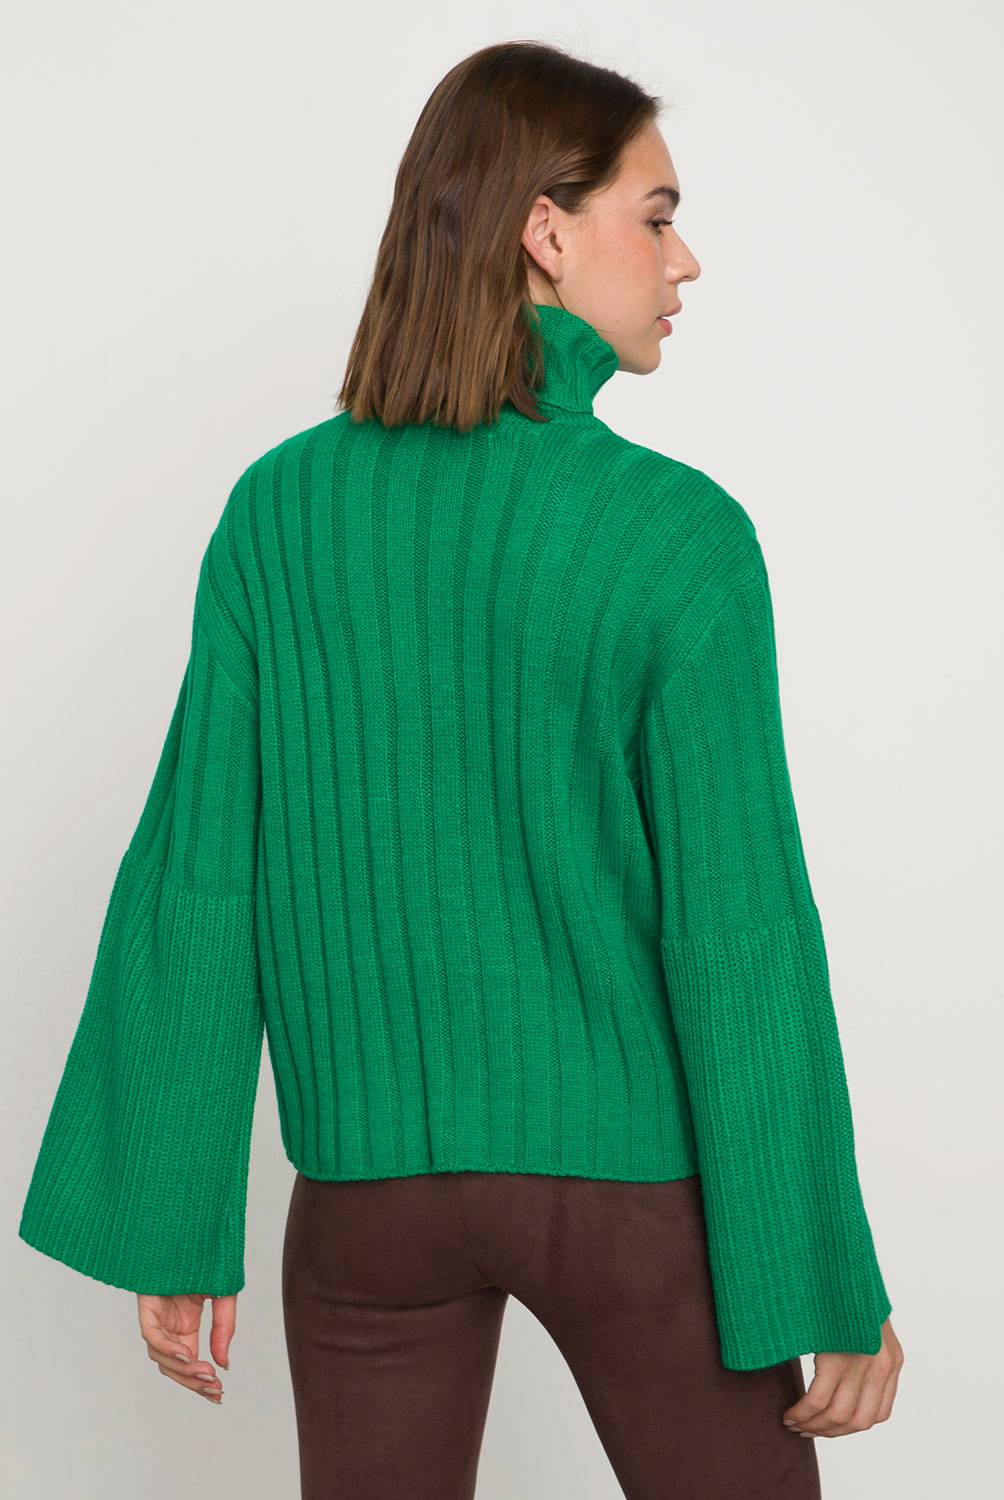 VERO MODA Vero Moda Sweater Mujer | falabella.com